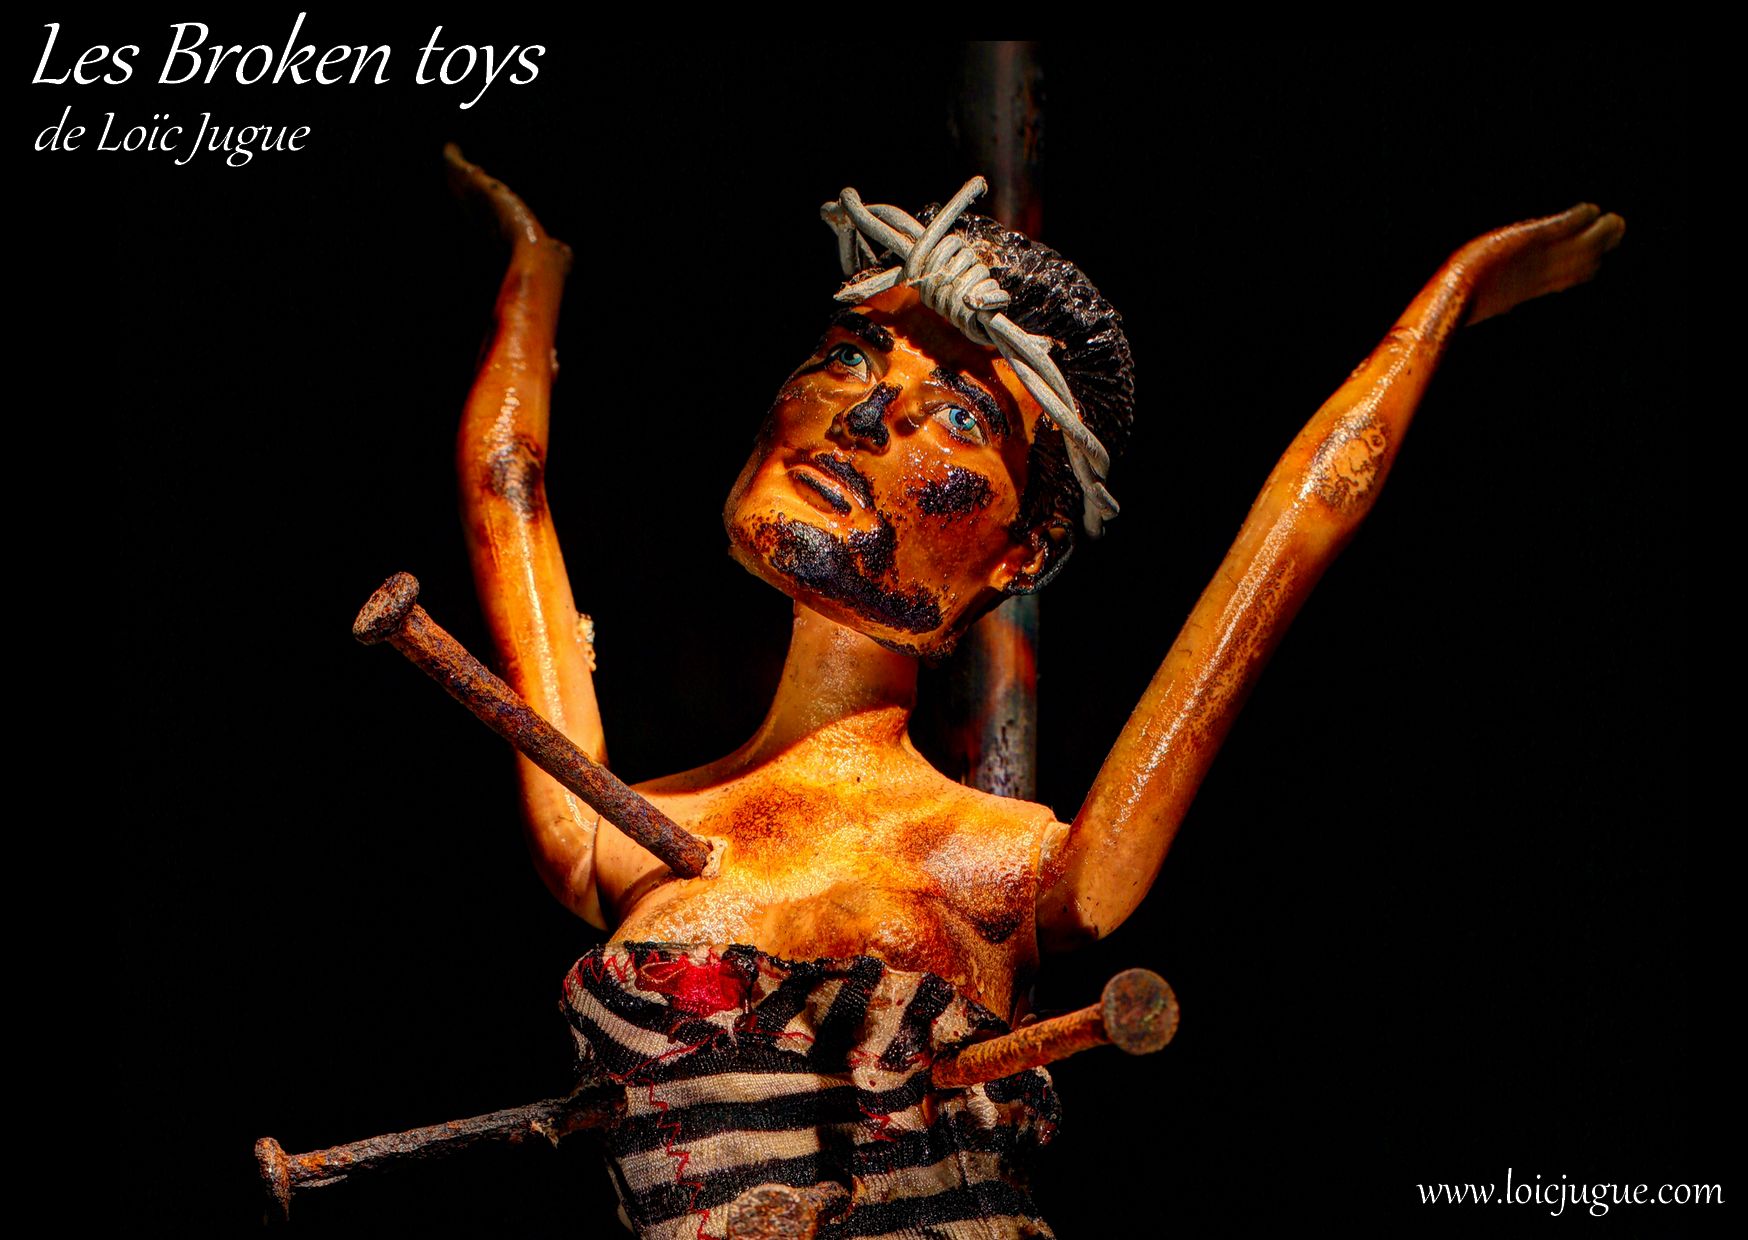 Les broken toys de Loïc Jugue: Le martyr de Saint Sébastien